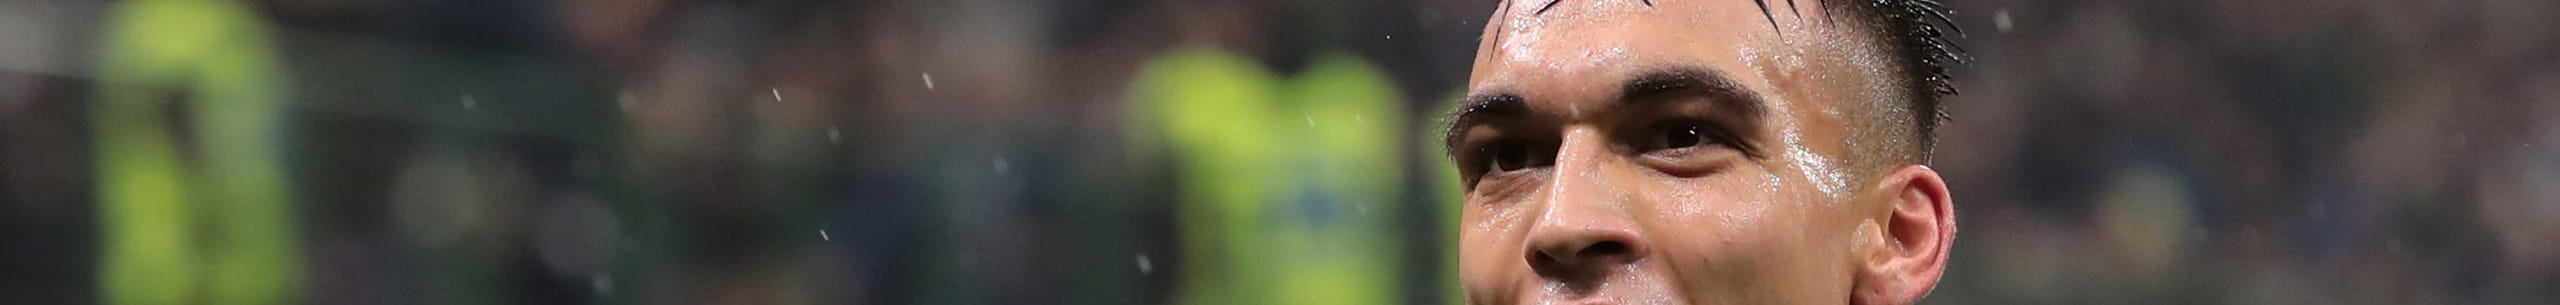 Inter-Barcellona, nerazzurri a San Siro con gli occhi della tigre: Lautaro sfida Messi